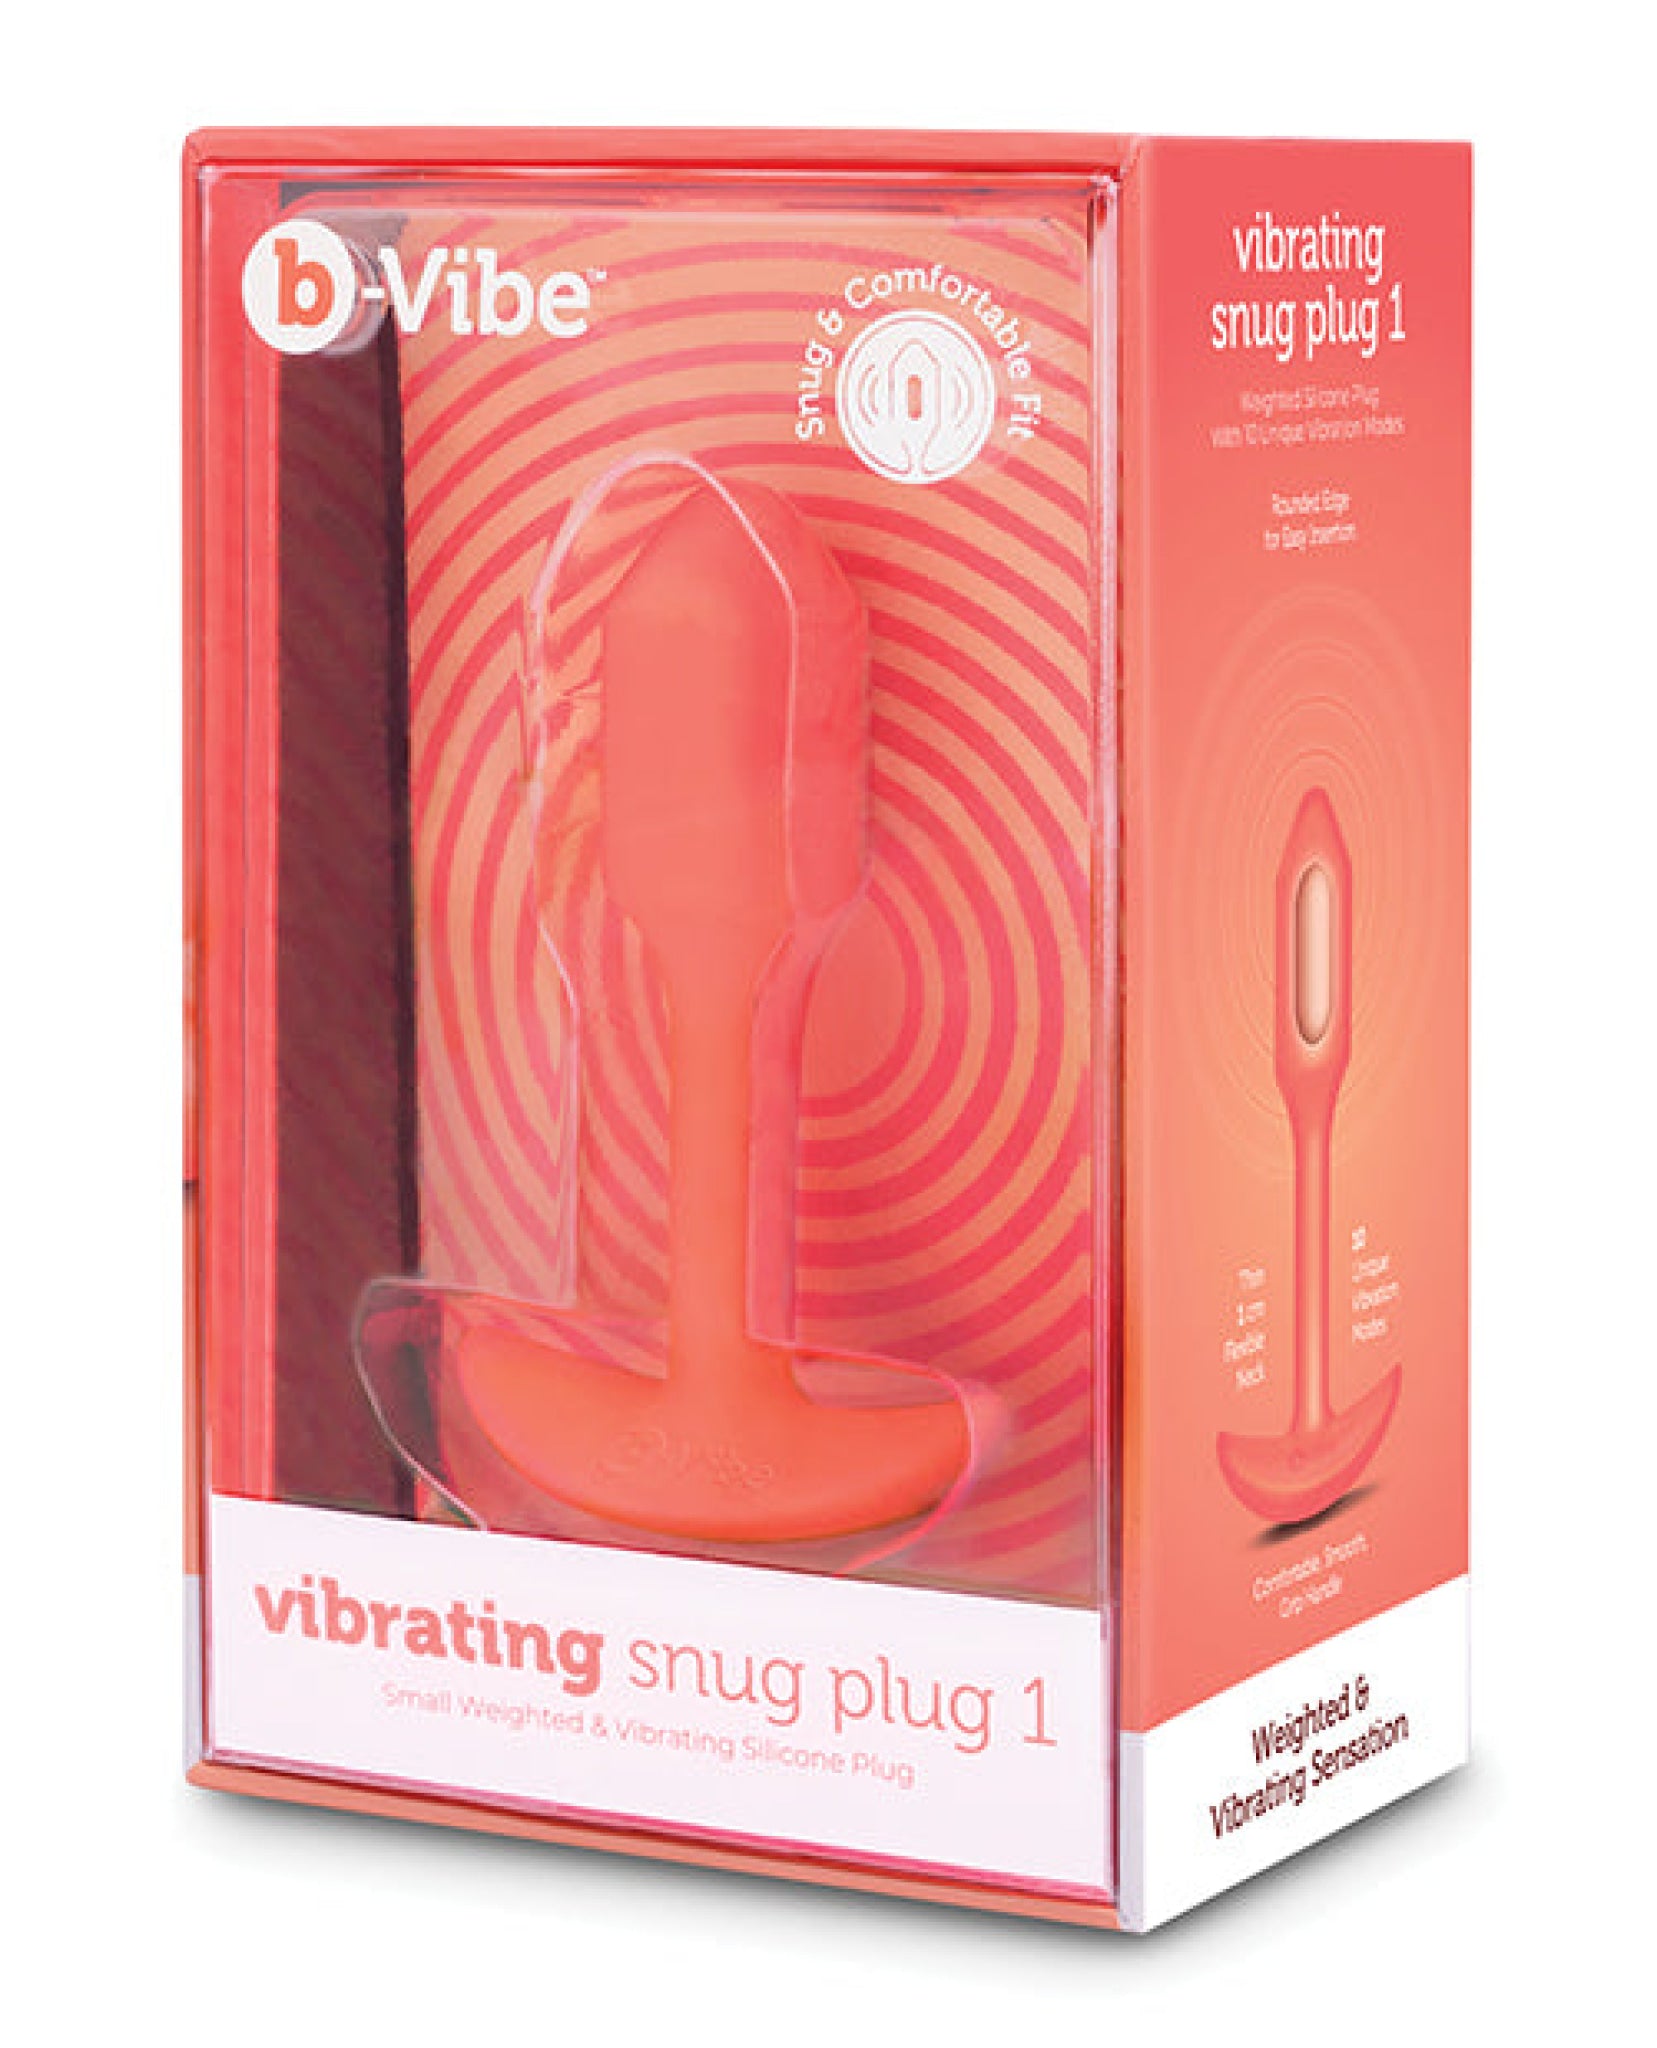 B-vibe Vibrating Snug Plug B-vibe